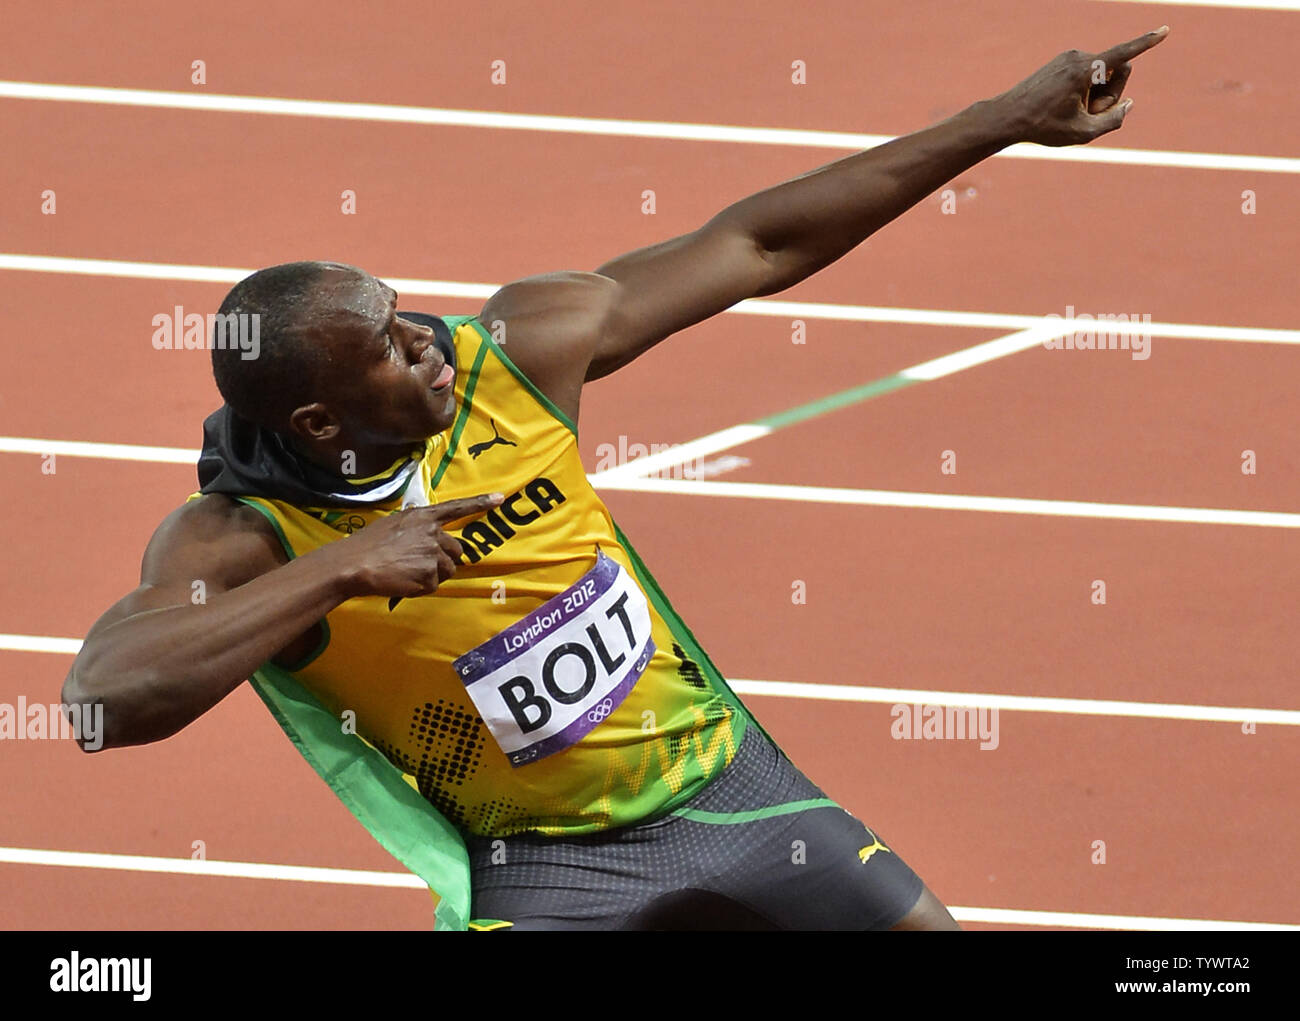 https://c8.alamy.com/compfr/tywta2/usain-bolt-de-la-jamaique-des-gestes-aussi-un-archer-apres-avoir-remporte-la-medaille-d-or-chez-les-hommes-100m-finalsl-au-jeux-olympiques-d-ete-de-2012-le-5-aout-2012-a-londres-en-angleterre-ensemble-un-record-olympique-avec-un-temps-de-9-63-secondes-upi-mike-theiler-tywta2.jpg